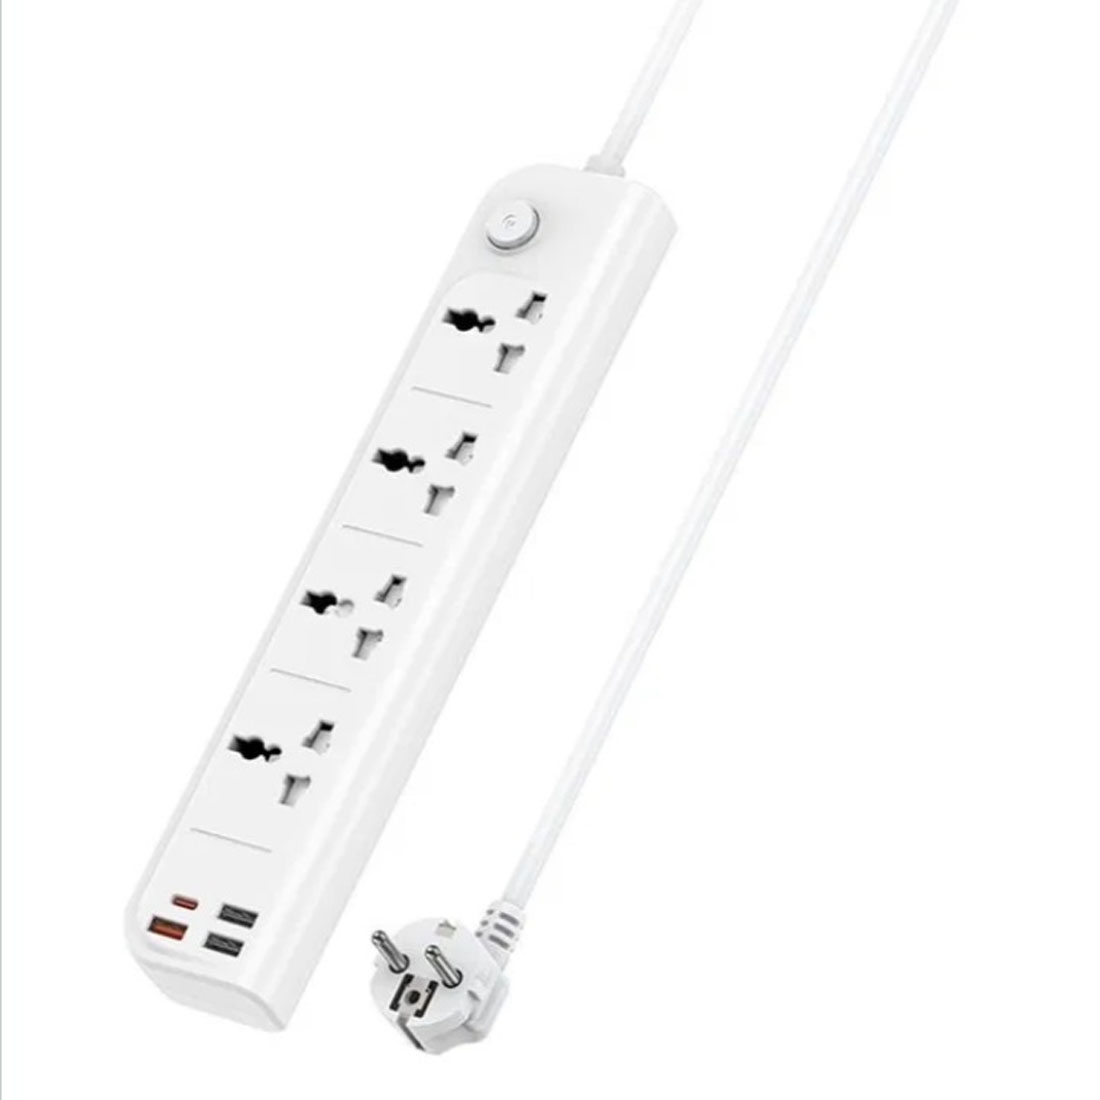 Сетевой фильтр, удлинитель YESIDO MC18, 4 розетки, 3 USB, 1 USB Type C, длина 2 метра, цвет белый